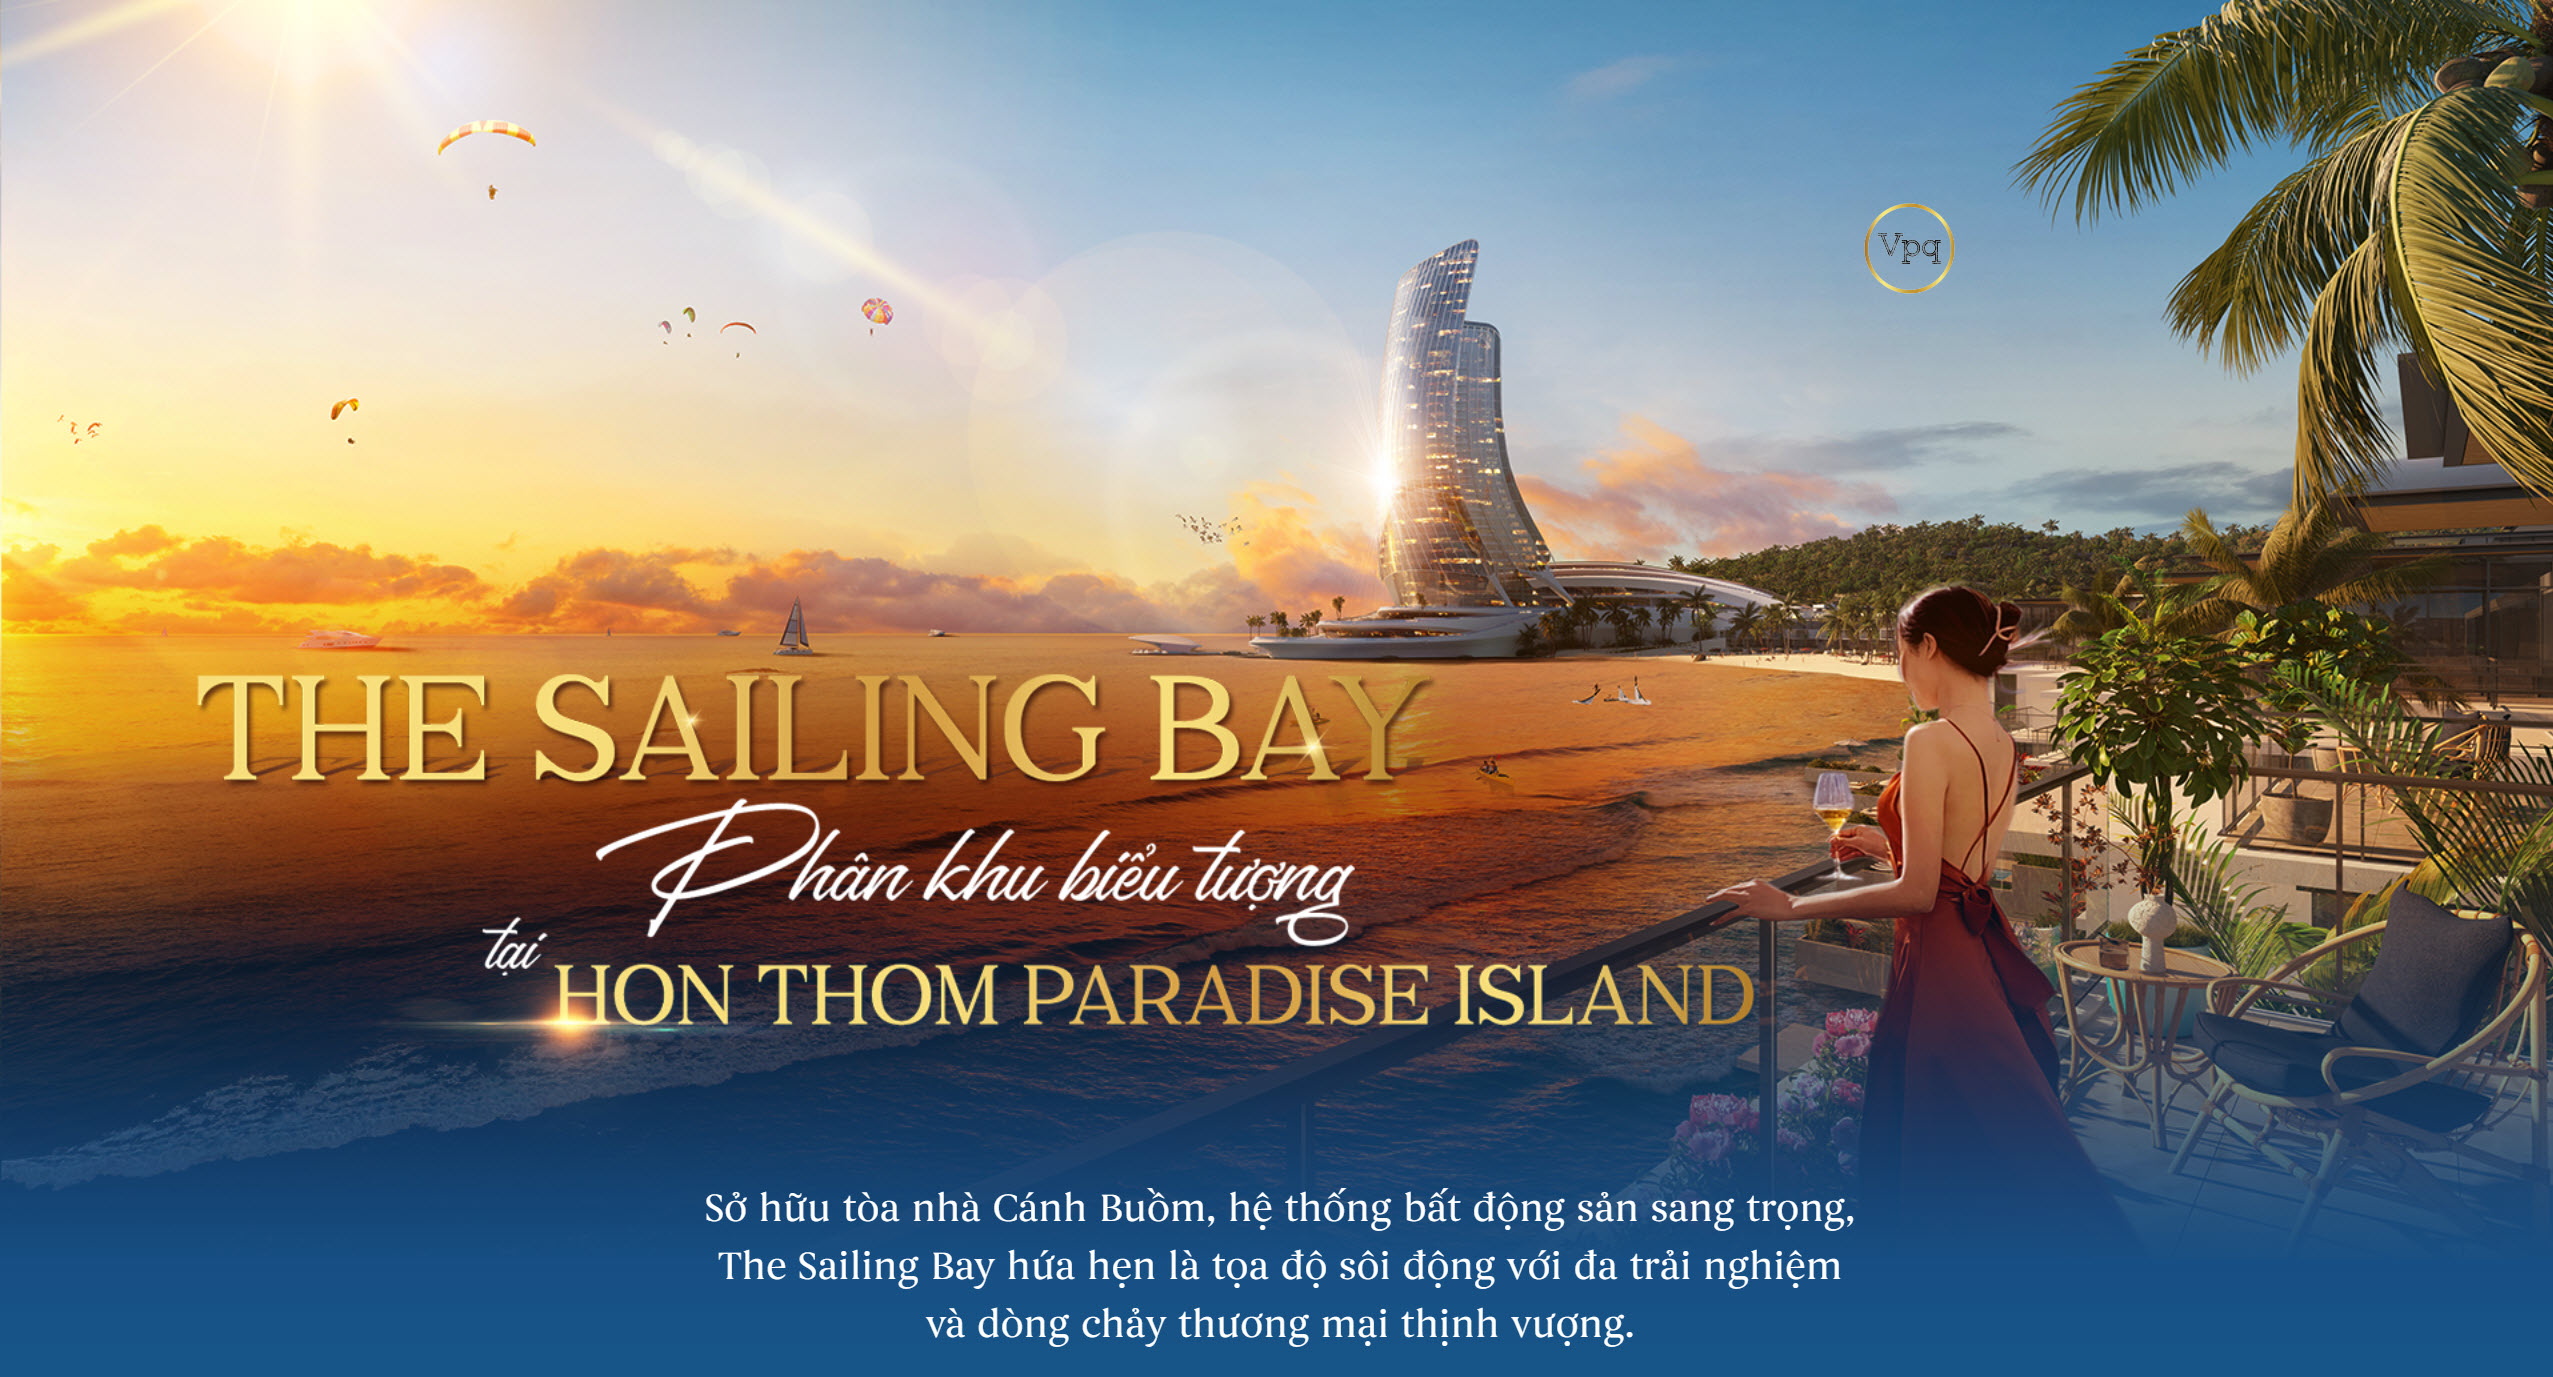 THE SAILING BAY: Phân khu biểu tượng tại Hon Thom Paradise Island